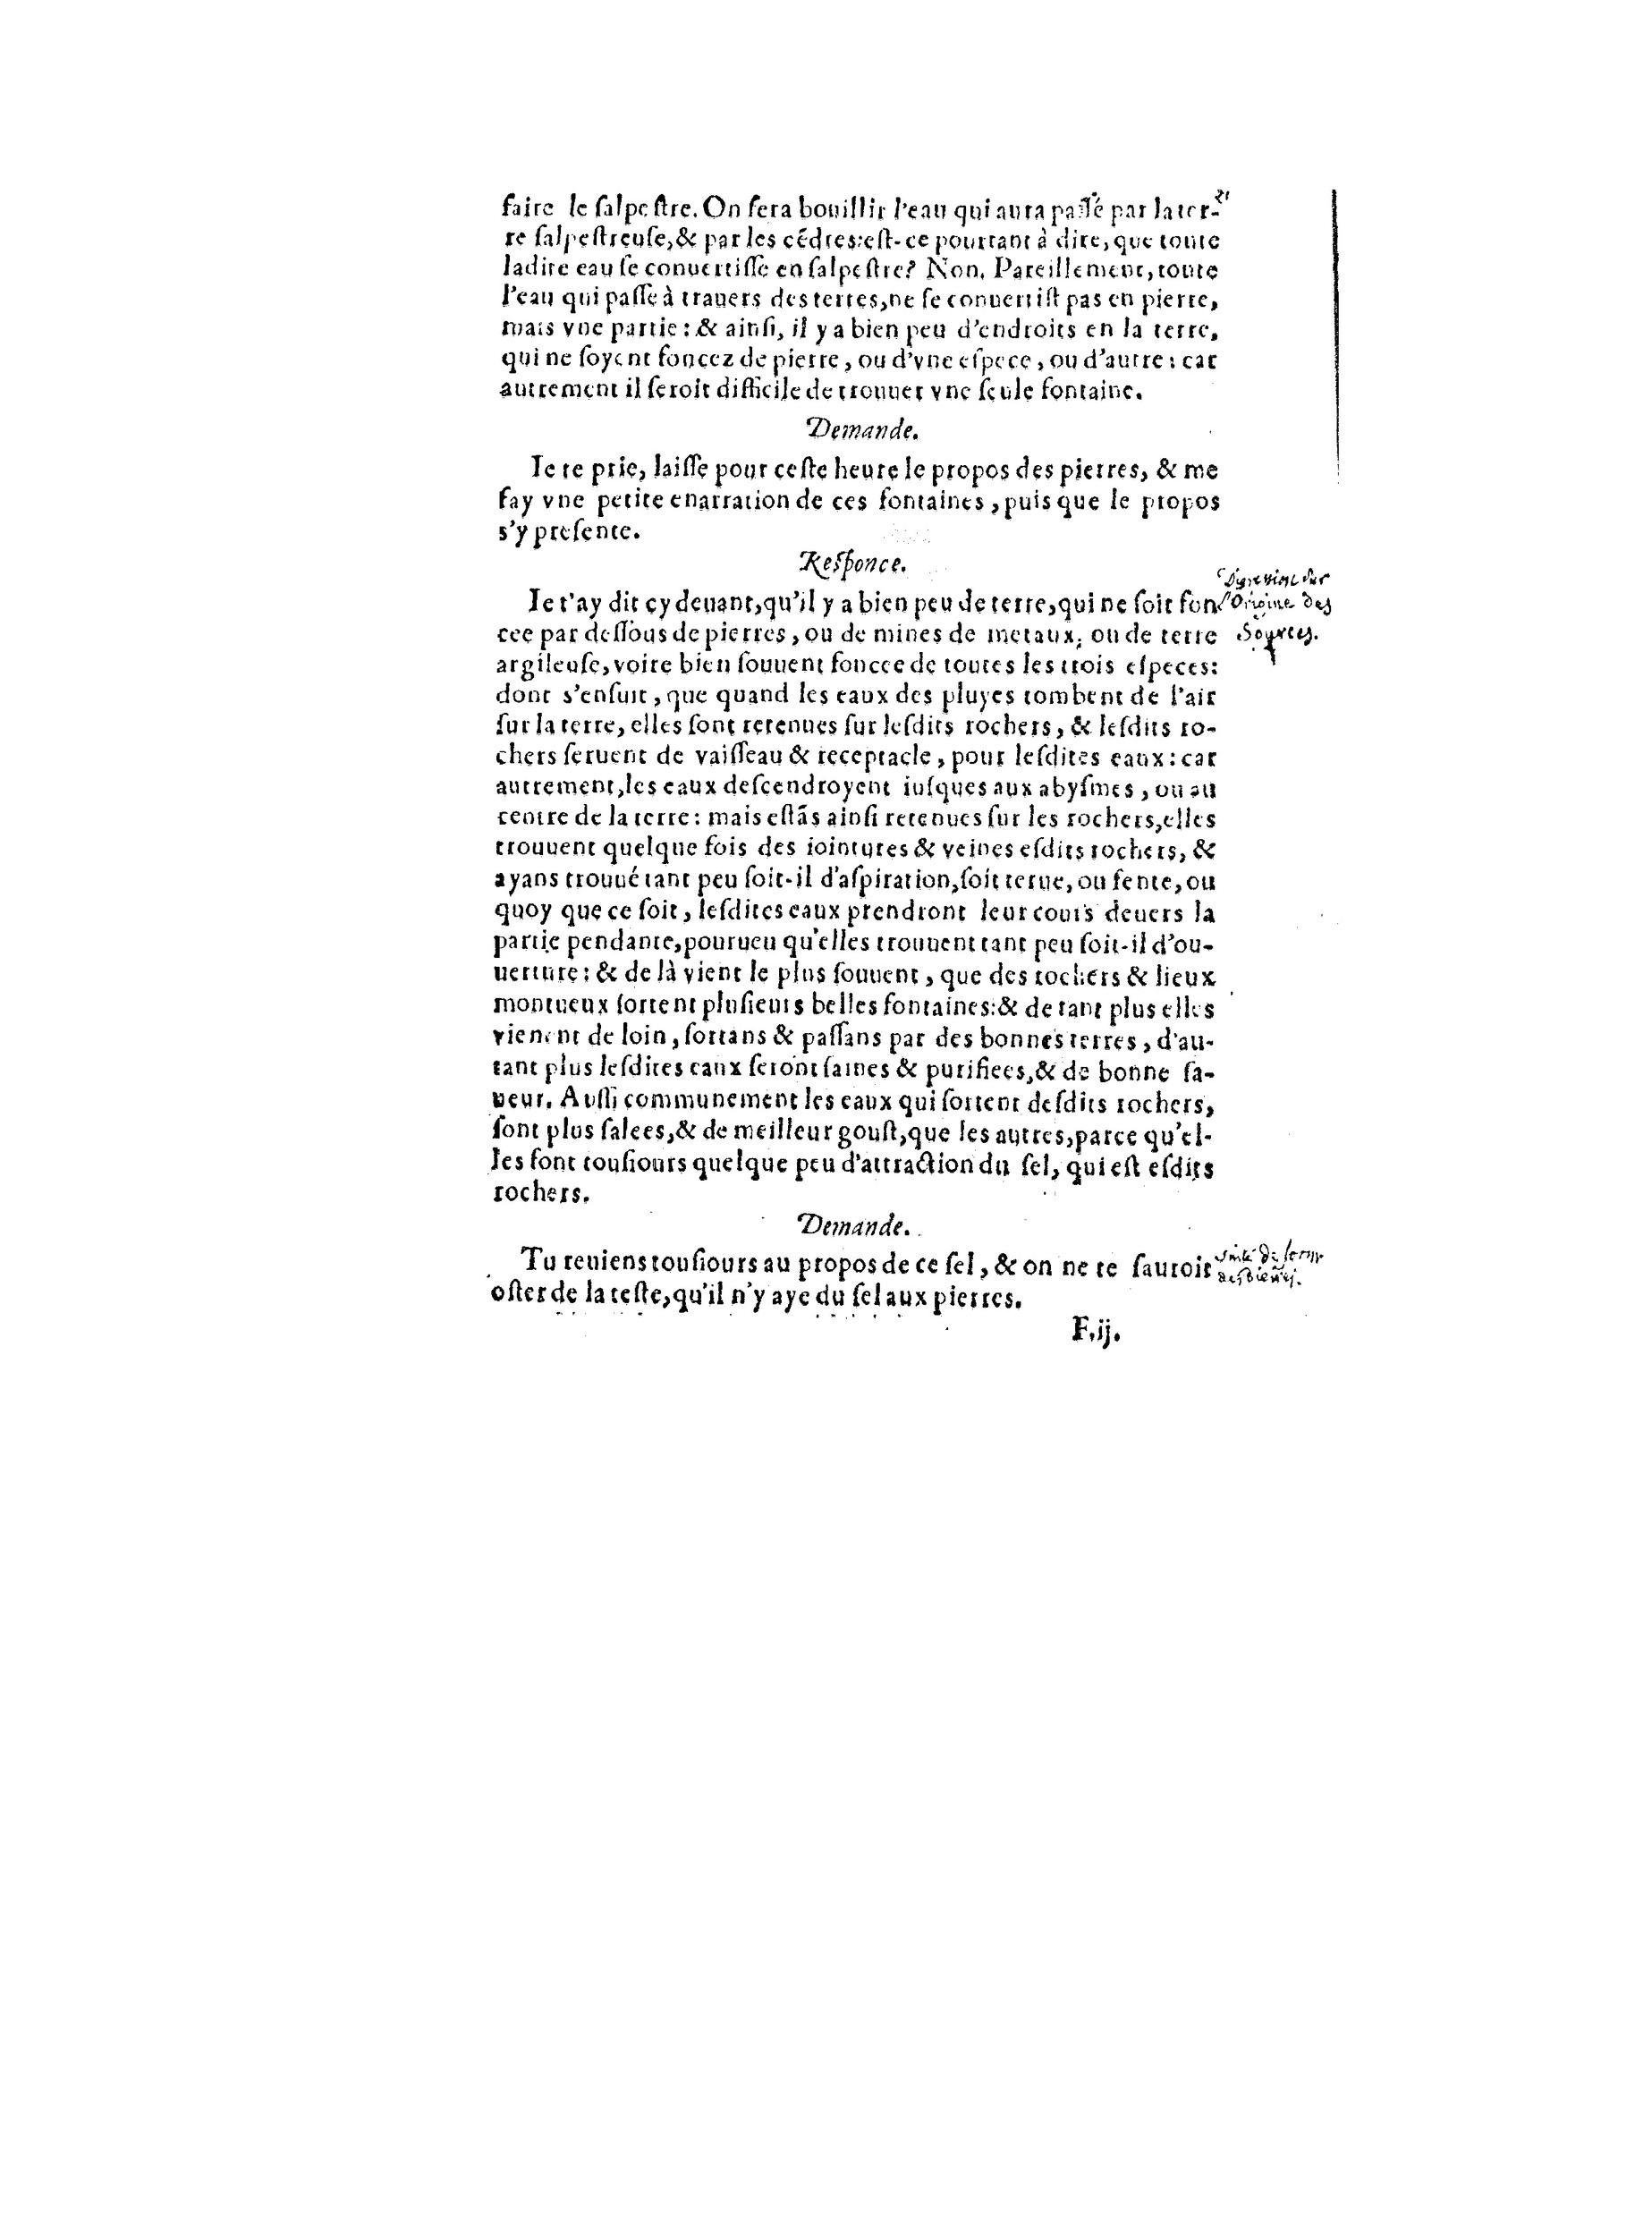 1563 Recepte veritable Berton_BNF_Page_046.jpg